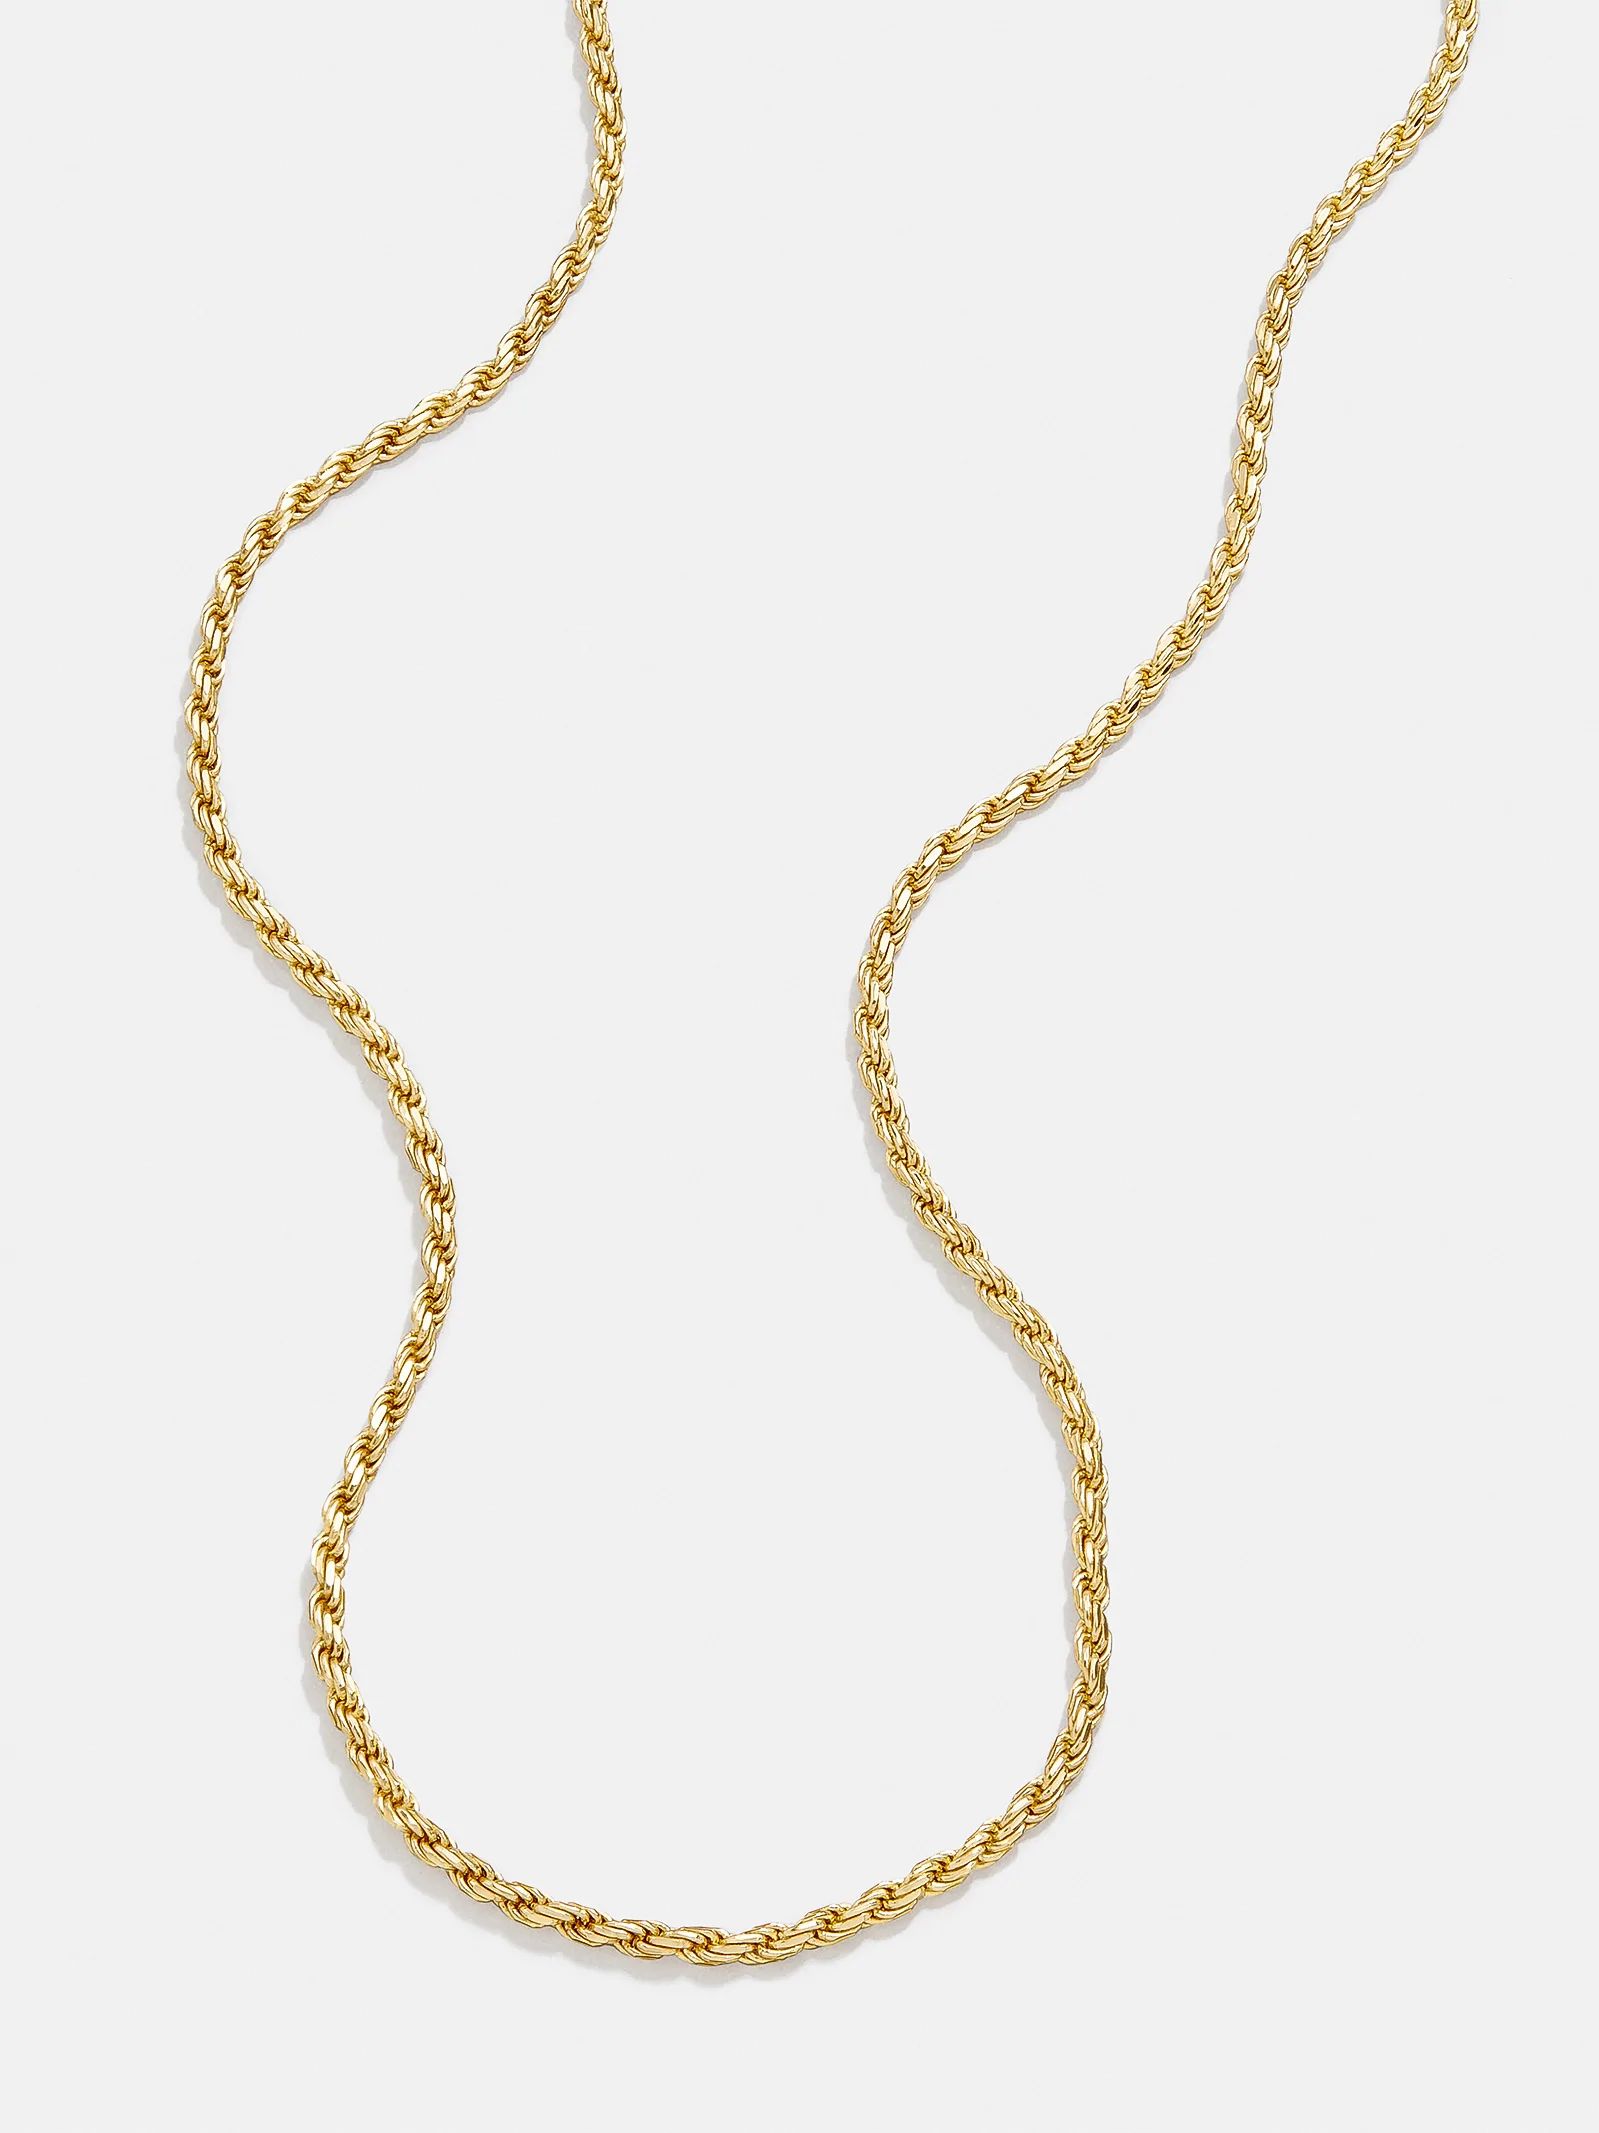 Sada 18K Gold Necklace | BaubleBar (US)